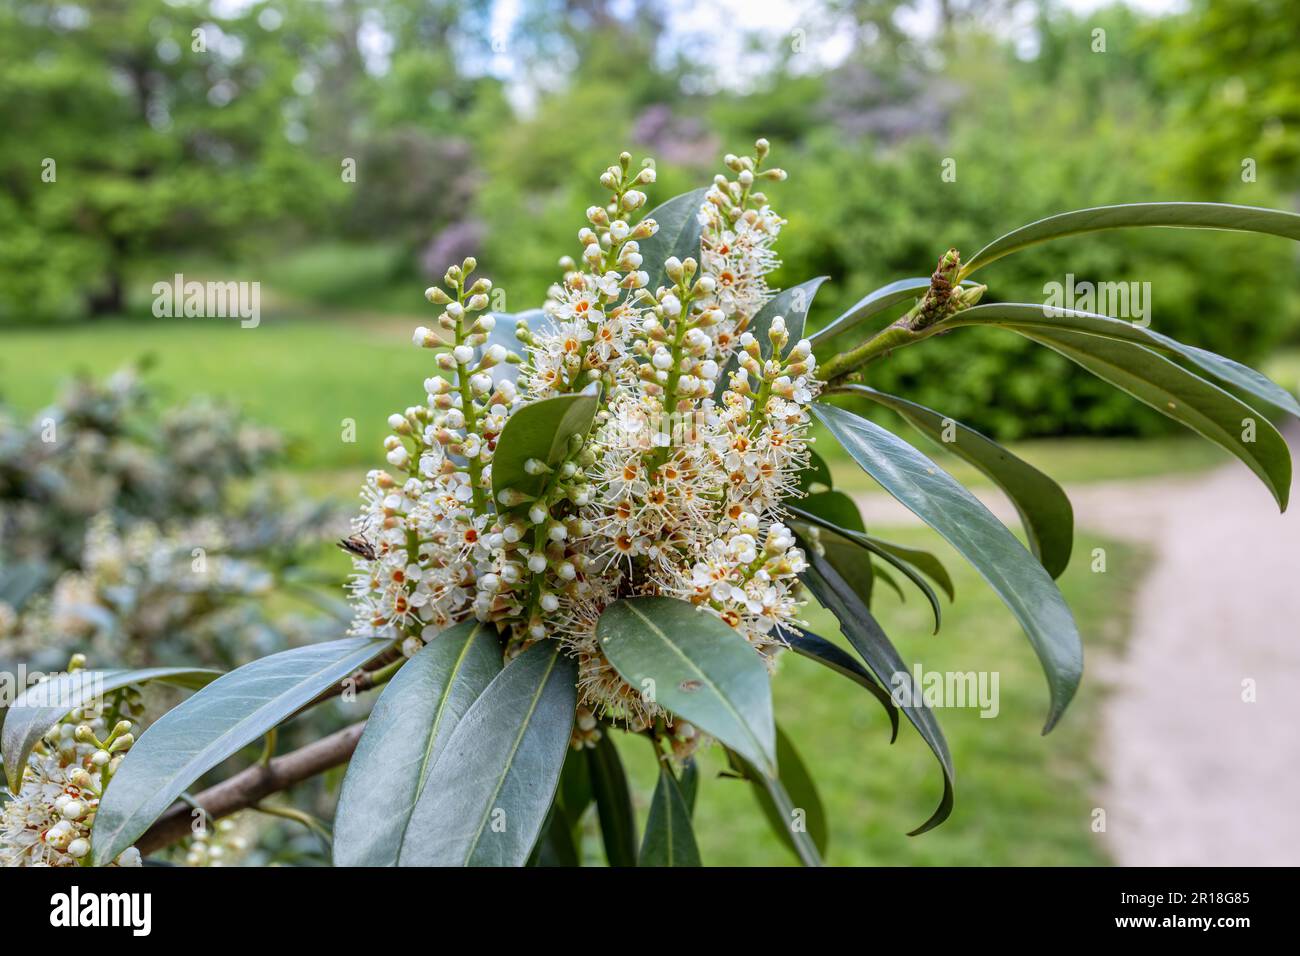 Prunus laurocerasus, auch bekannt als KirschLaurel, gewöhnlicher Laurel. Im Park blühen die blühenden Prunus laurocerasus-Blumen. Tschechische Republik Stockfoto